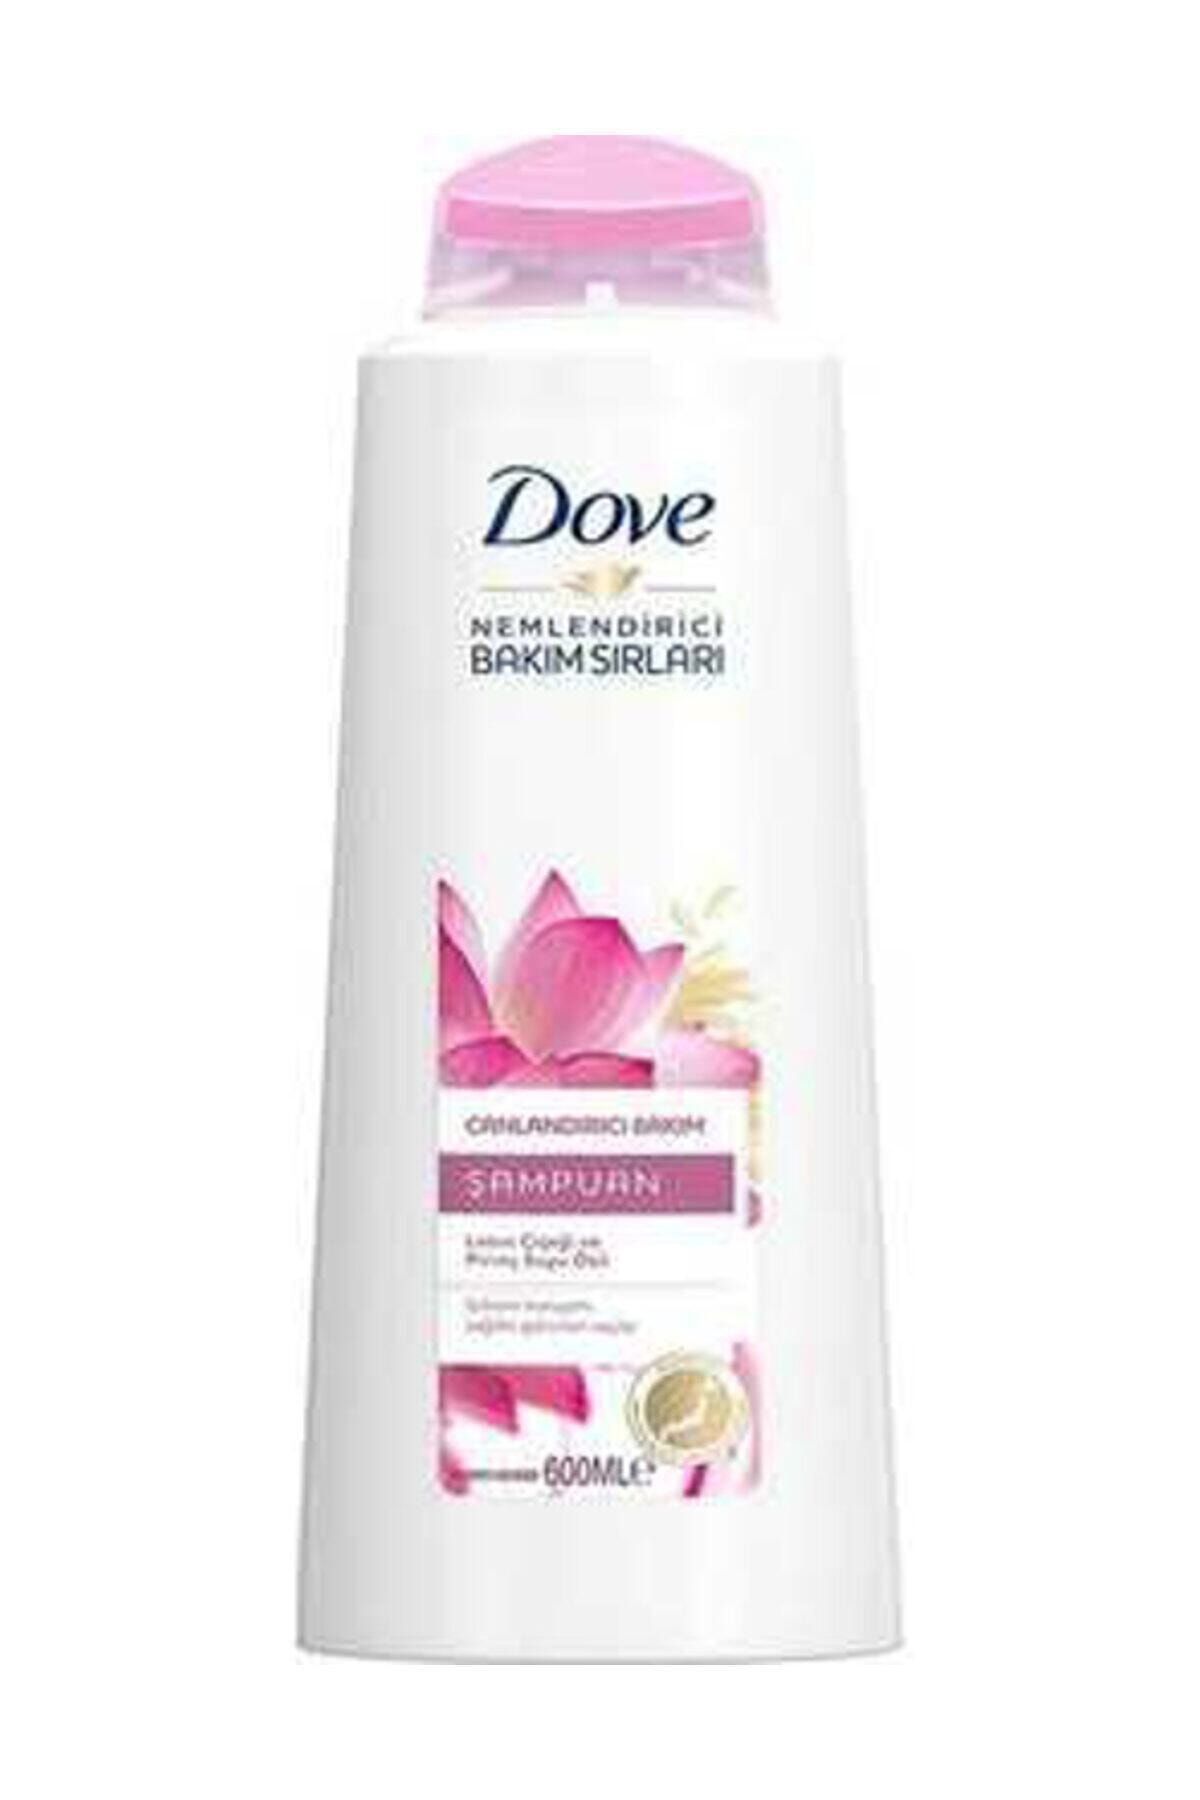 Dove Şampuan Canlandırıcı Bakım Lotus 600 Ml